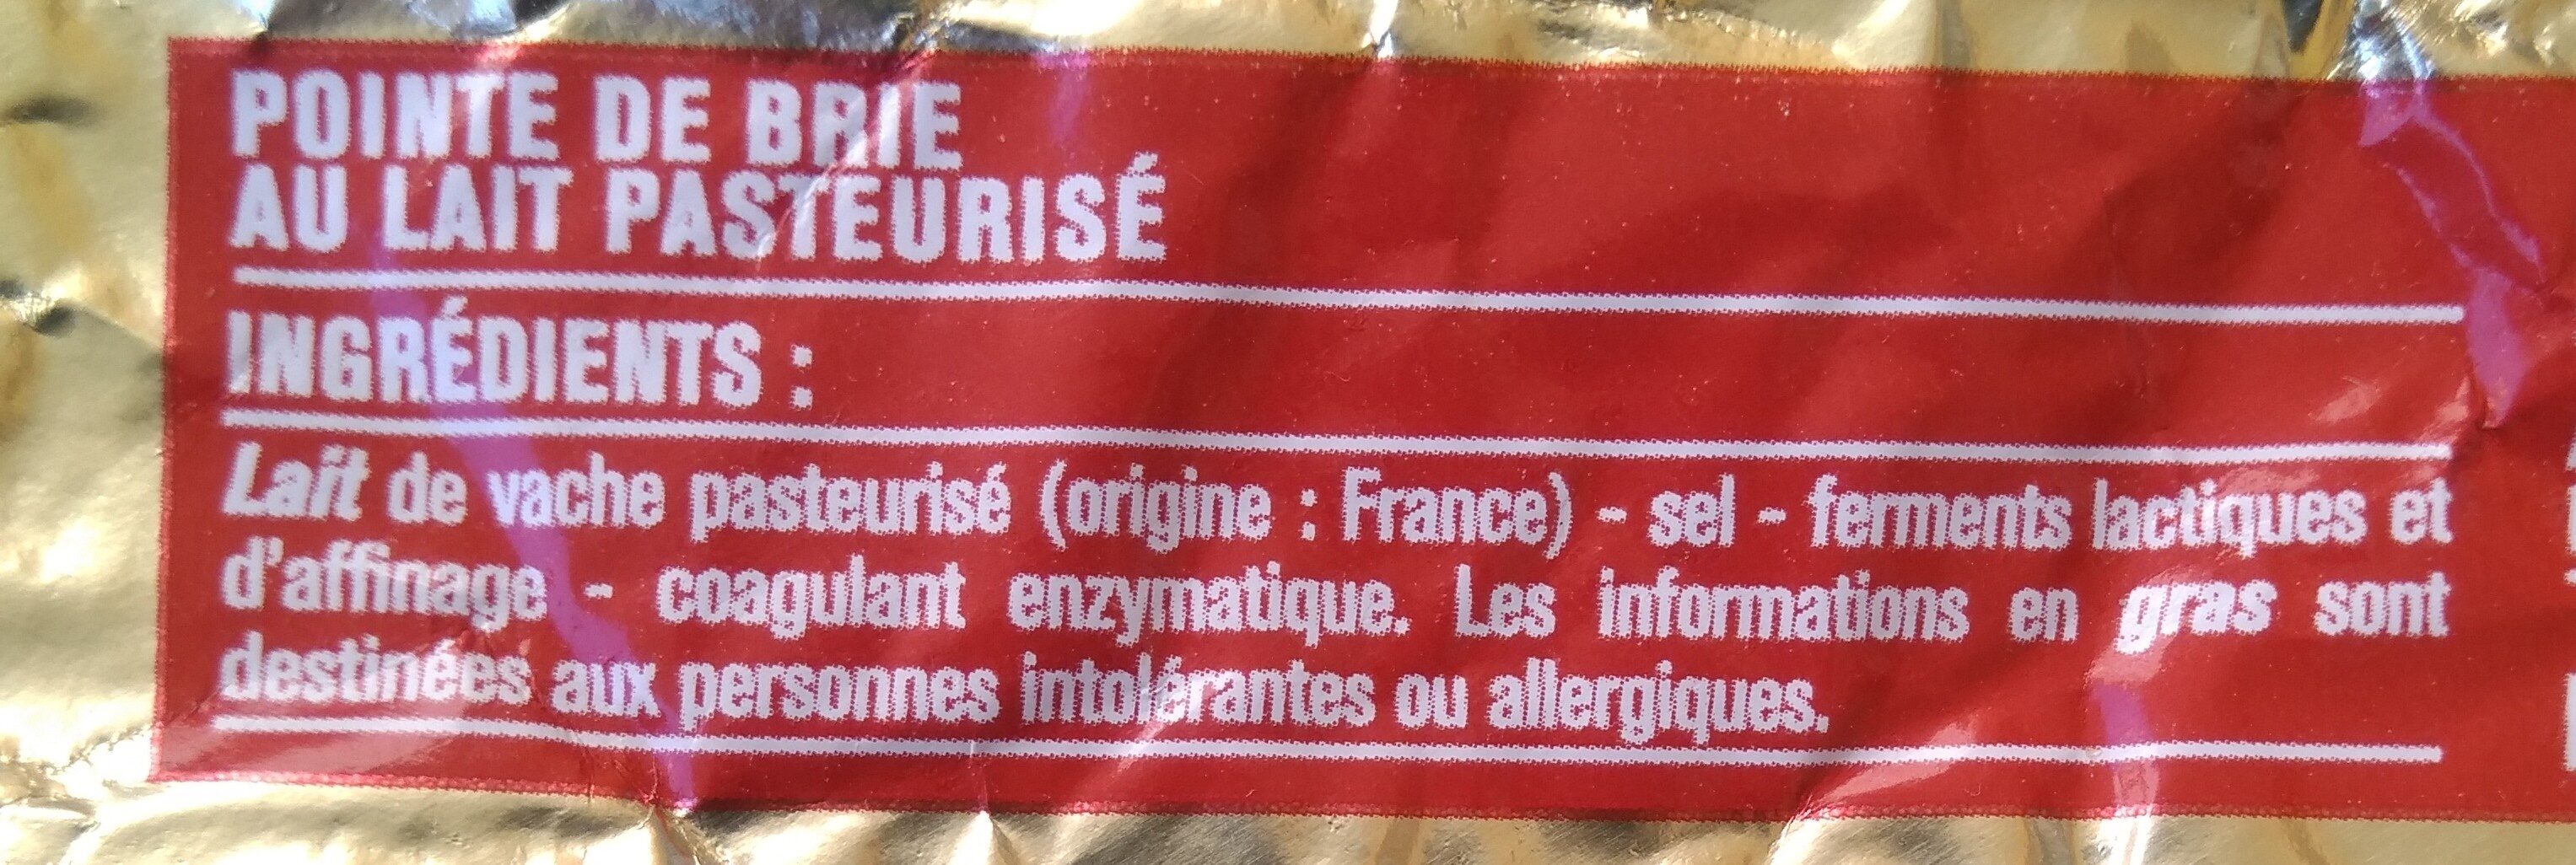 Pointe de Brie (32 % MG) - Ingredients - fr